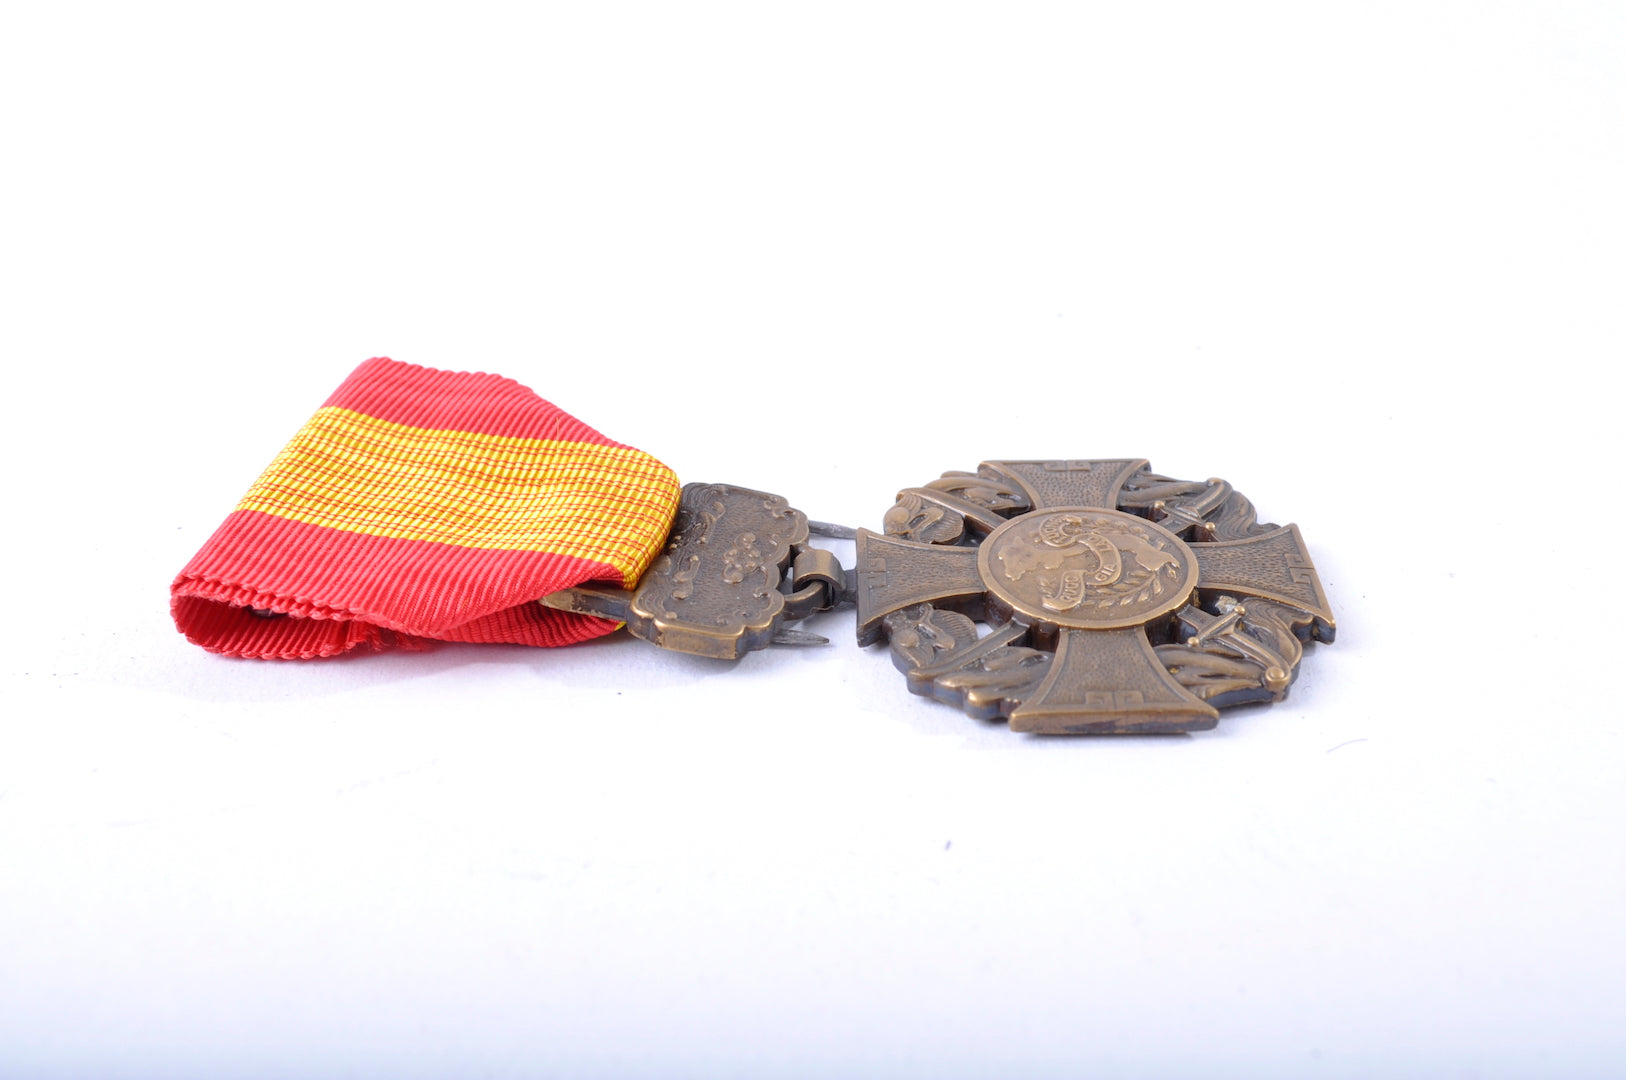 Médaille de la bravoure vietnamienne dans sa boite " Saigon"